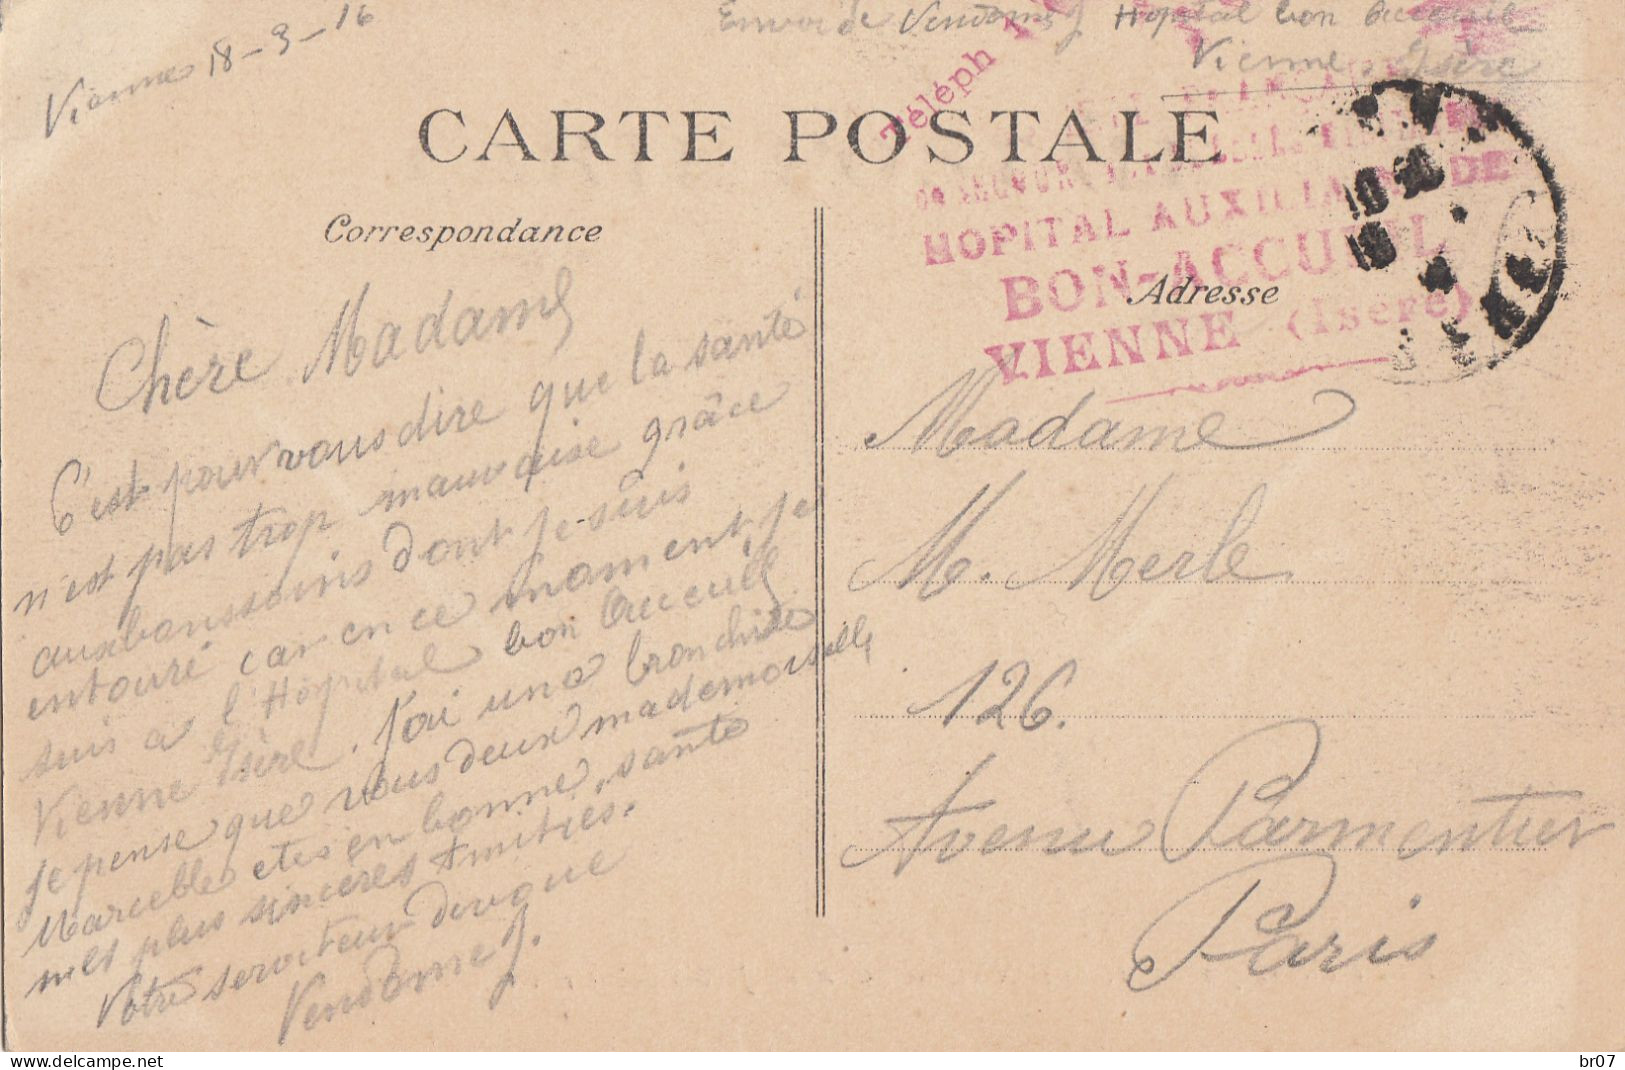 ISERE CP 1916 VIENNE FM HOPITAL AUXILIAIRE DE BON ACCUEIL VIENNE - WW I